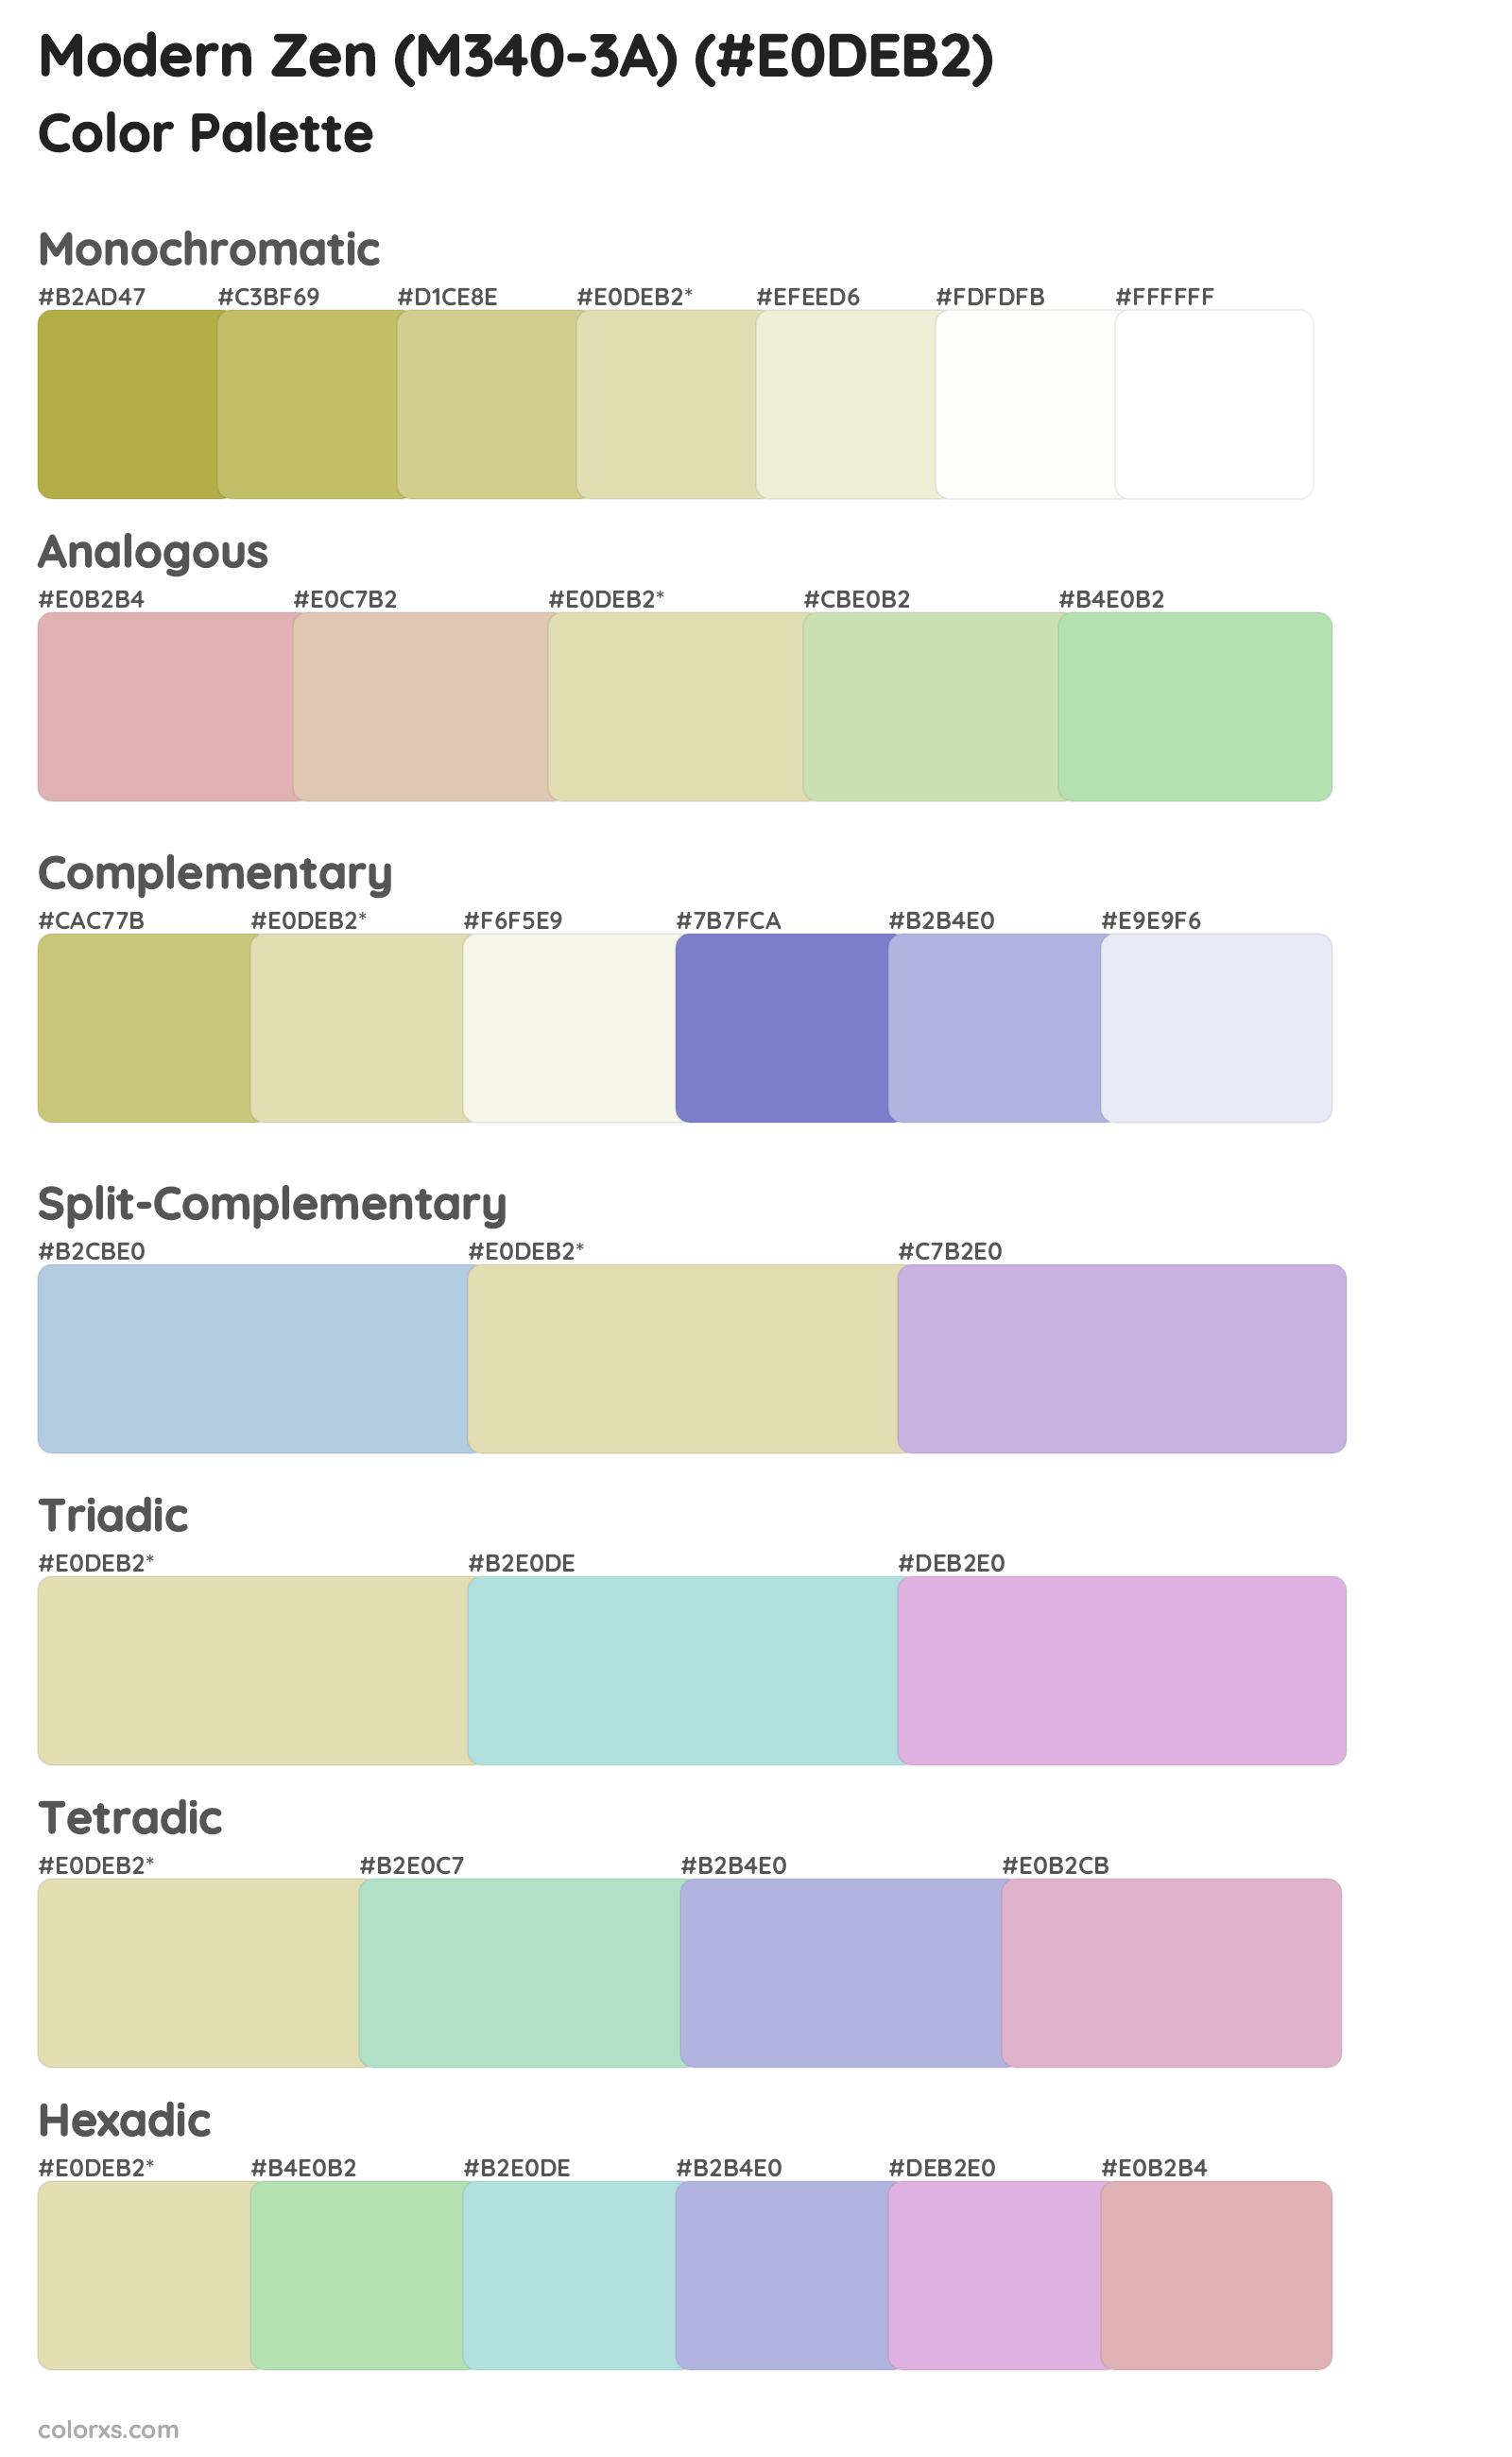 Modern Zen (M340-3A) Color Scheme Palettes